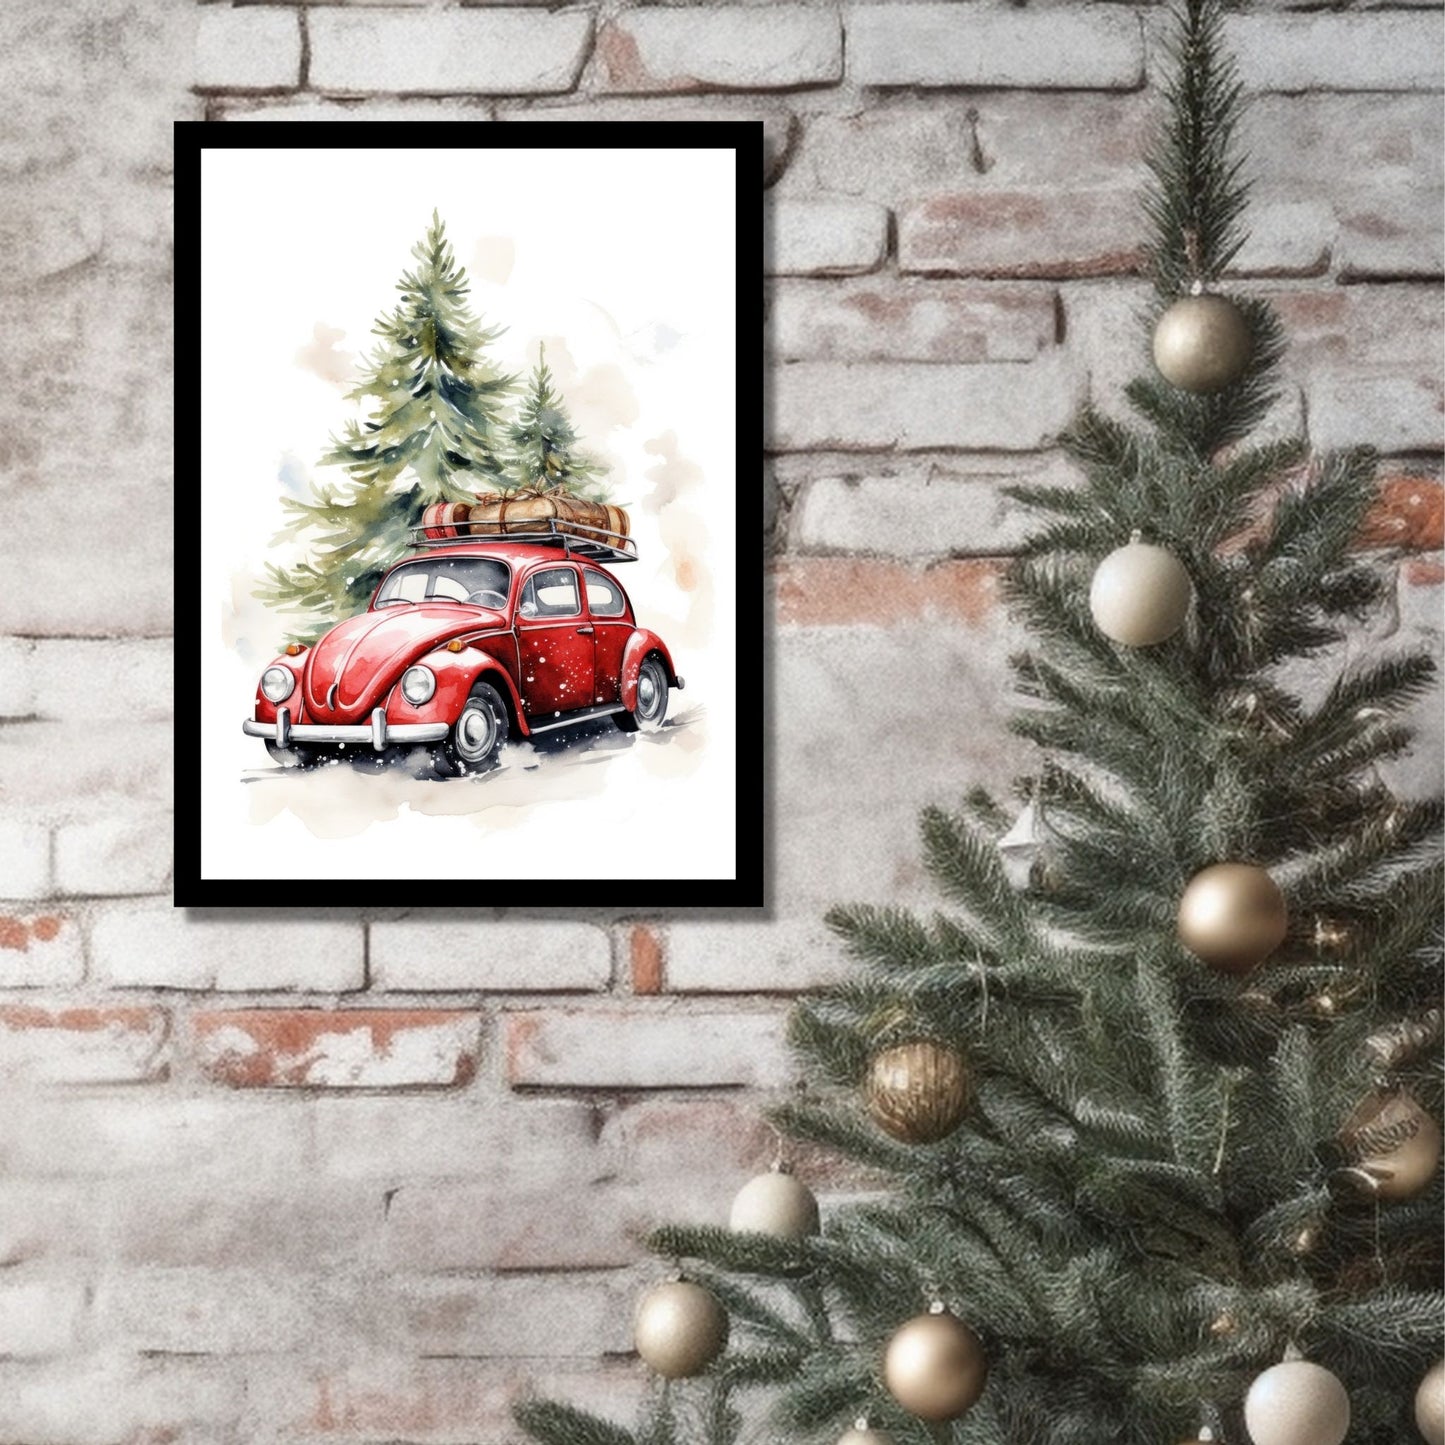 Plakat og lerret med grafisk julemotiv av gammel, rød volkswagen boble. Bilen kjører i en skog, og på taket er den lastet med juledekorasjoner. På bildet henger motivet som plakaten i en sort ramme på en murvegg ved siden av et juletre.